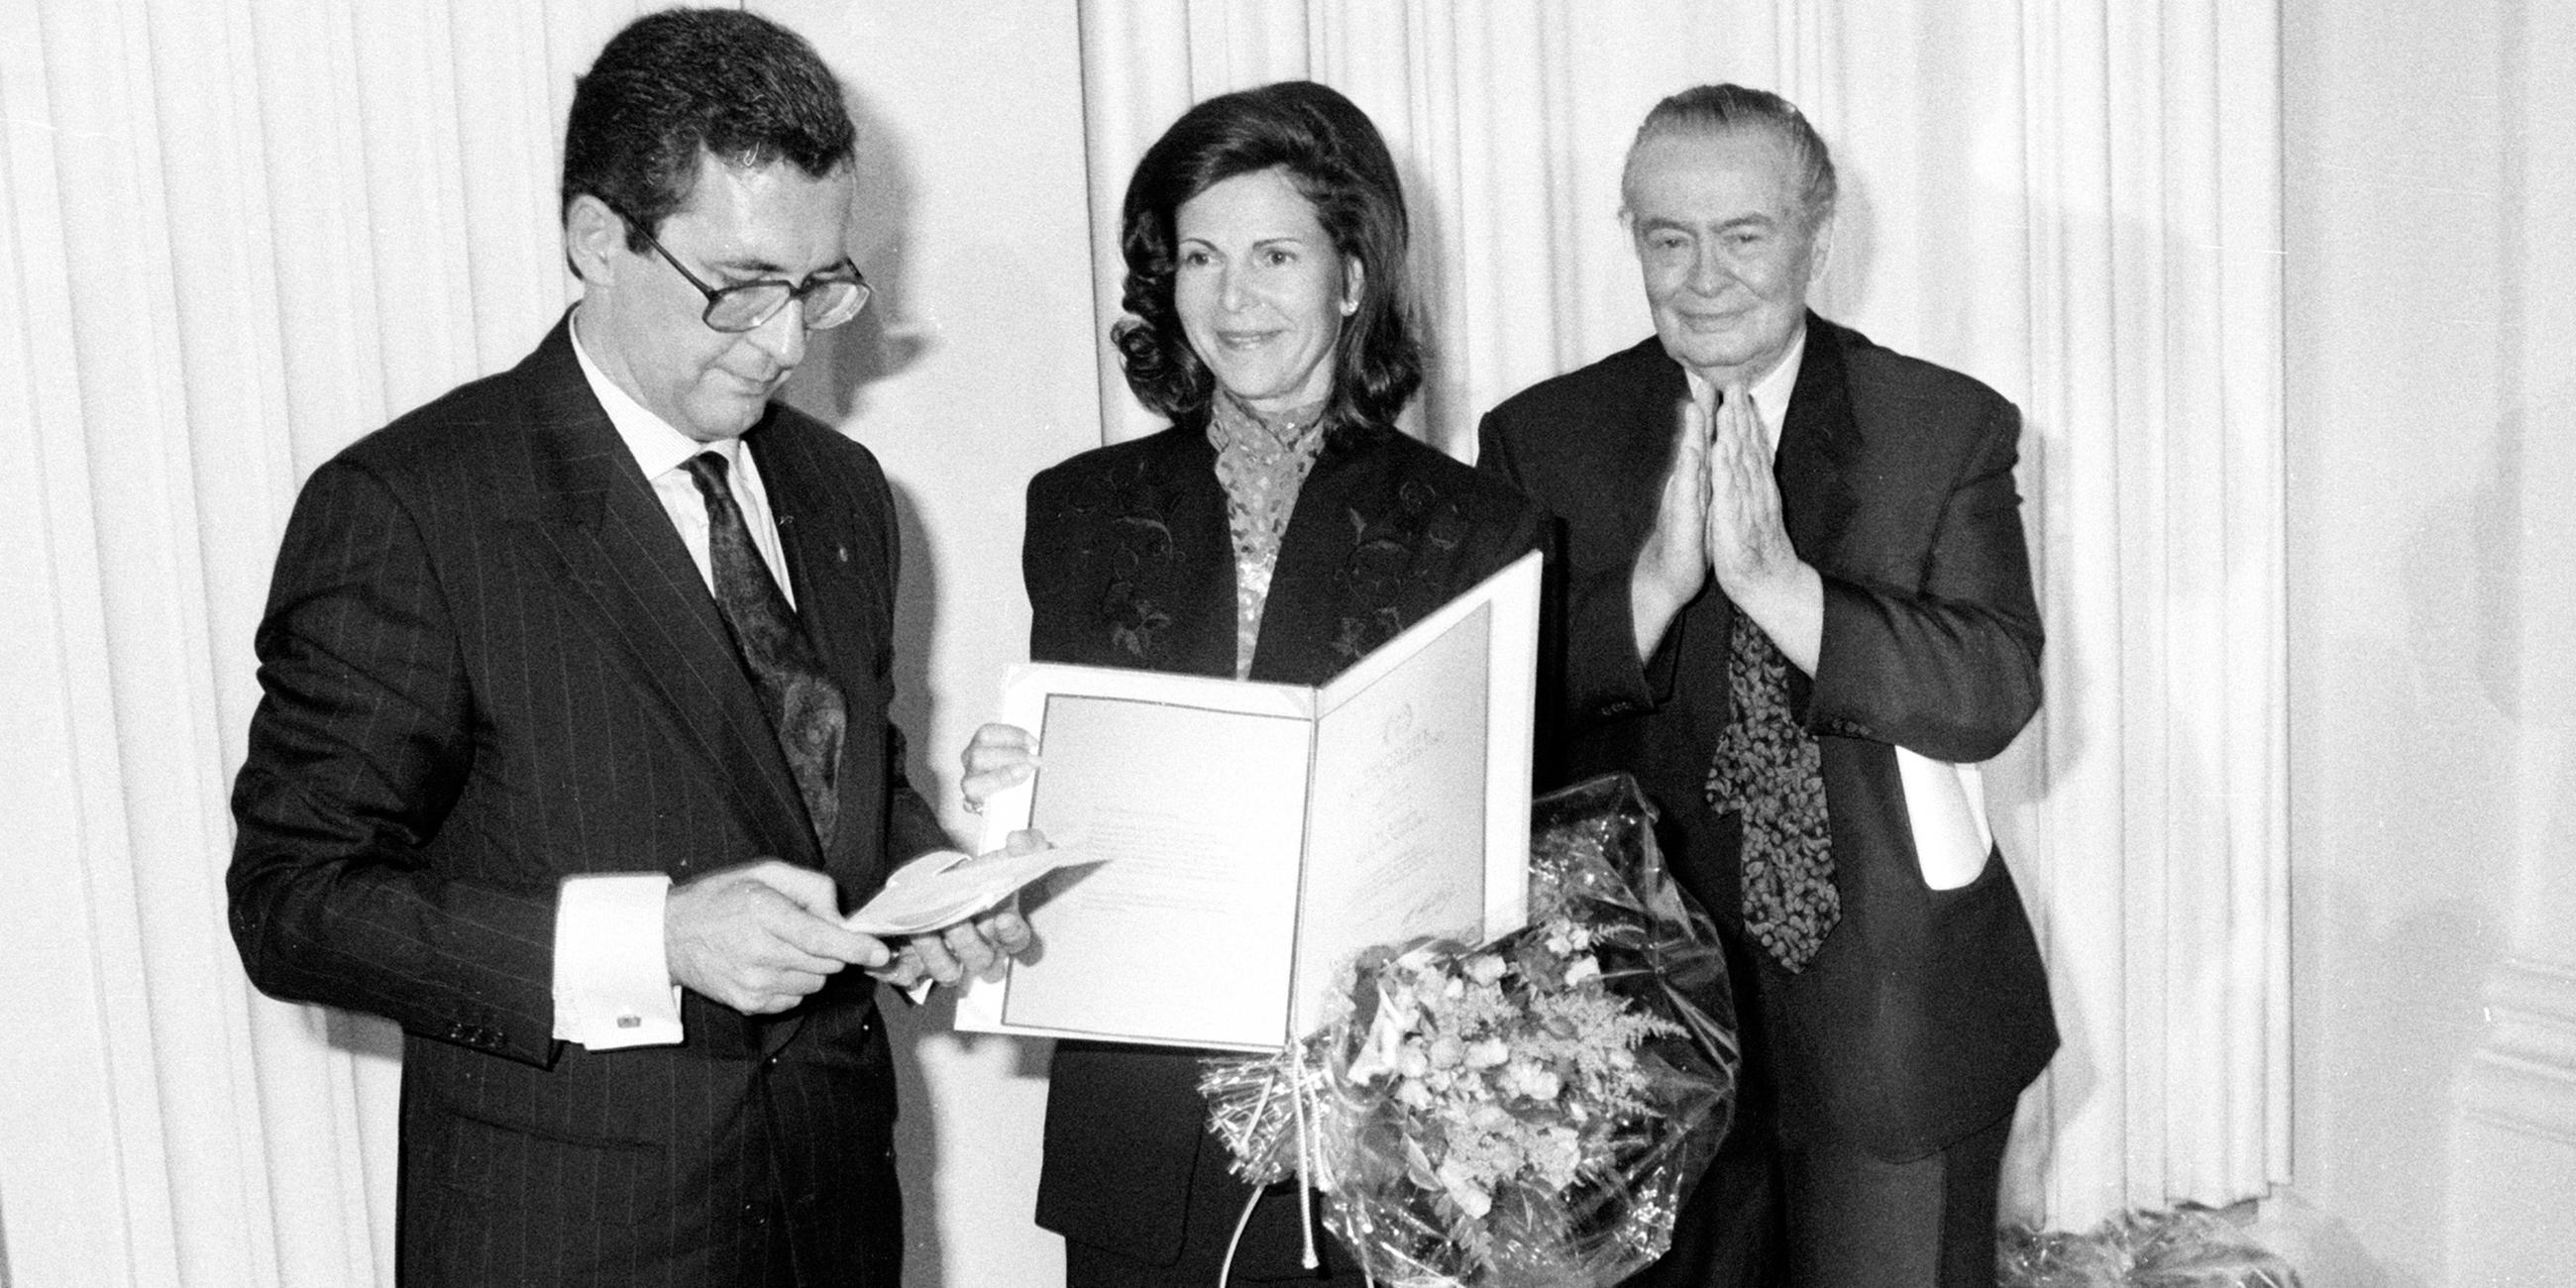 Archiv: Silvia bekommt den Deutschen Kulturpreis für ihren Einsatz für den Behindertensport im Jahre 1990 verliehen